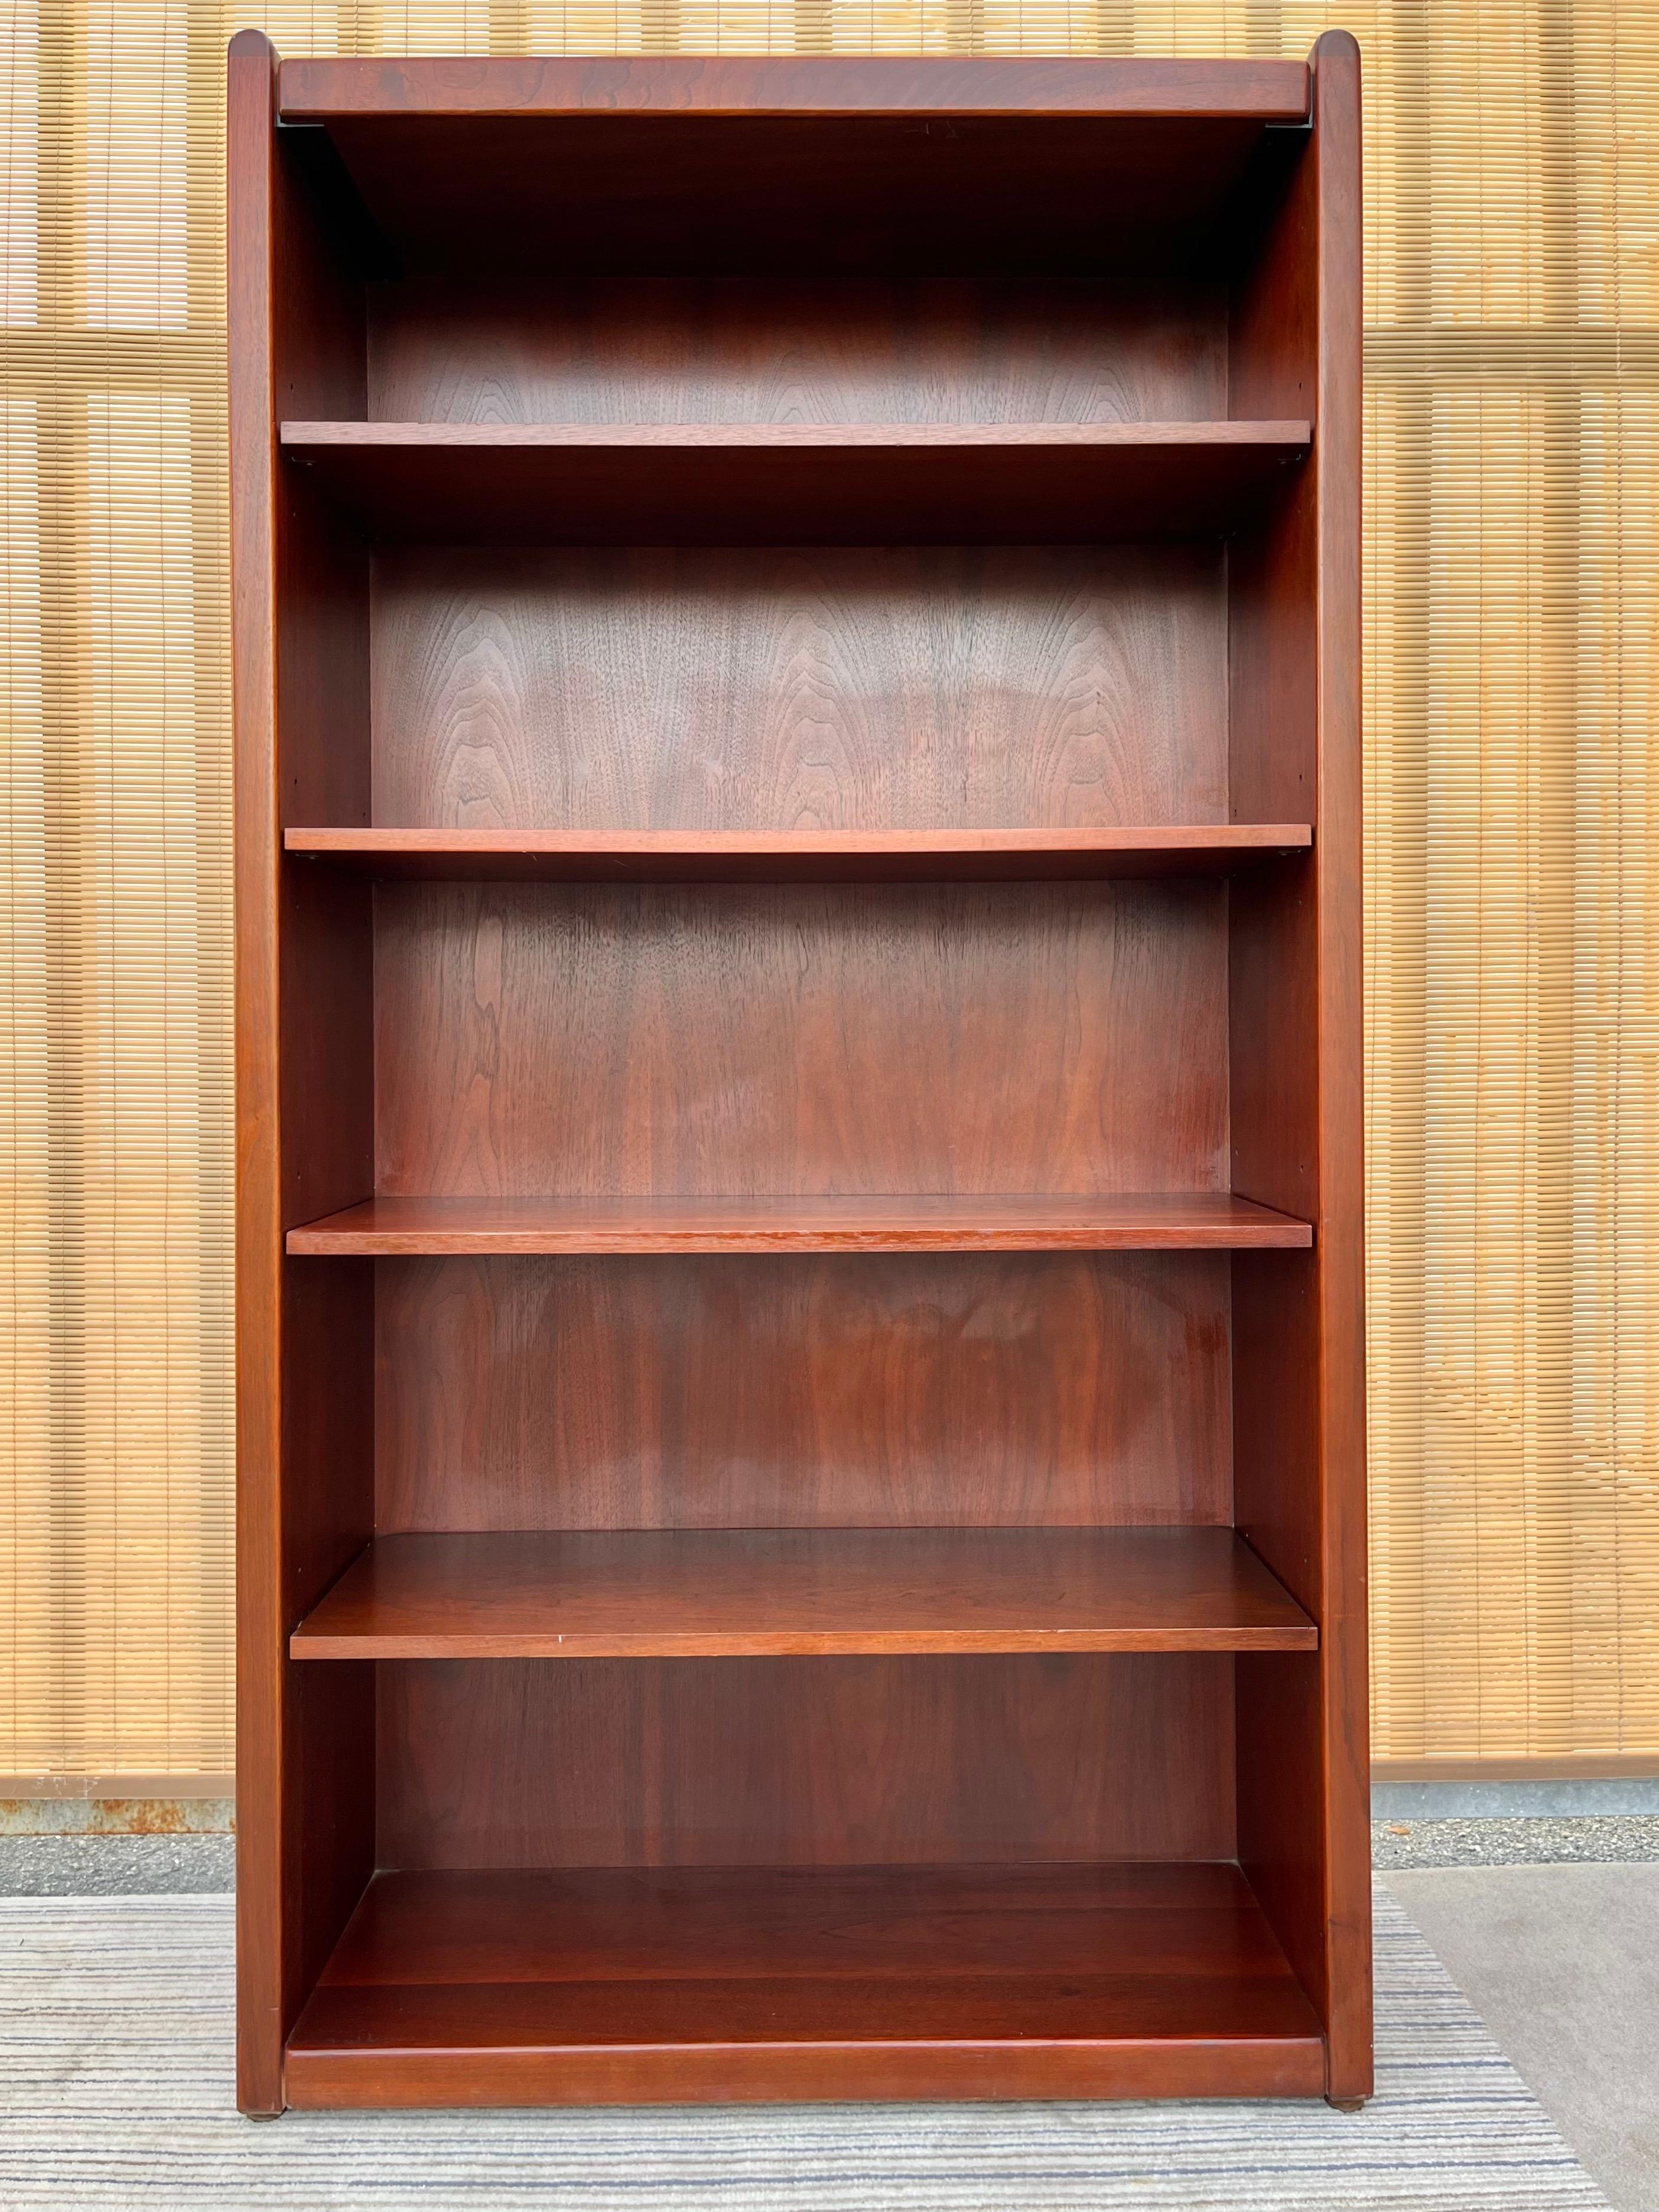 Offenes Bücherregal mit 5 Regalen von Kimball Furniture, Ende des 20. Jahrhunderts. Ca. 1990er Jahre. 
Dieses robuste, offene Bücherregal zeichnet sich durch ein geradliniges Design mit abgerundeten Oberkanten, vier verstellbare Holzeinlegeböden